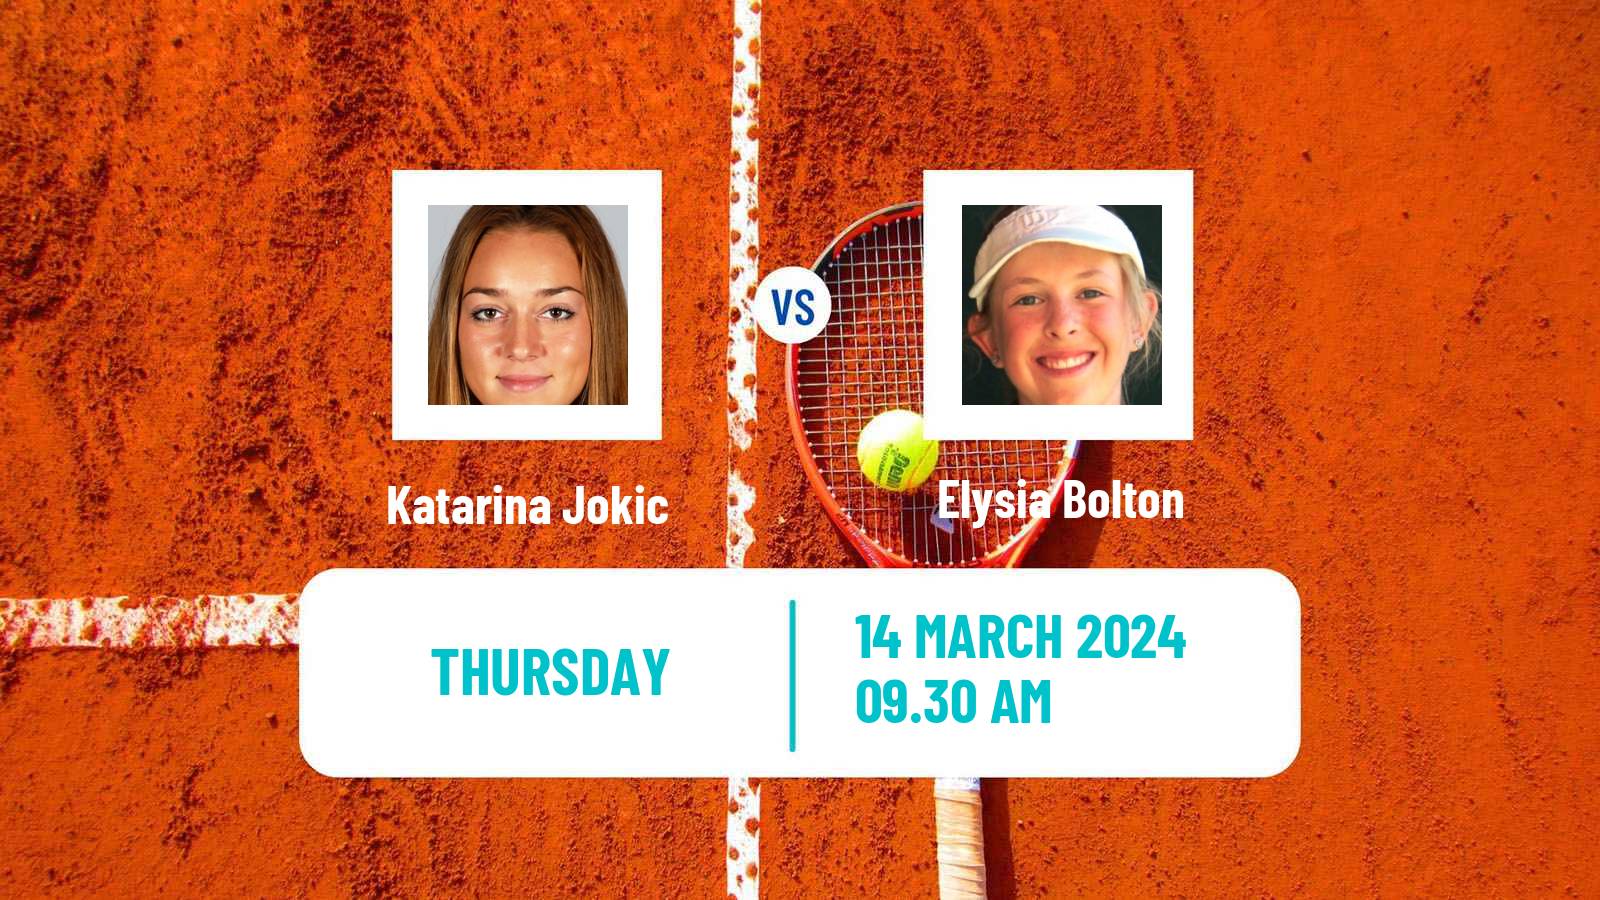 Tennis ITF W35 Santo Domingo 2 Women Katarina Jokic - Elysia Bolton